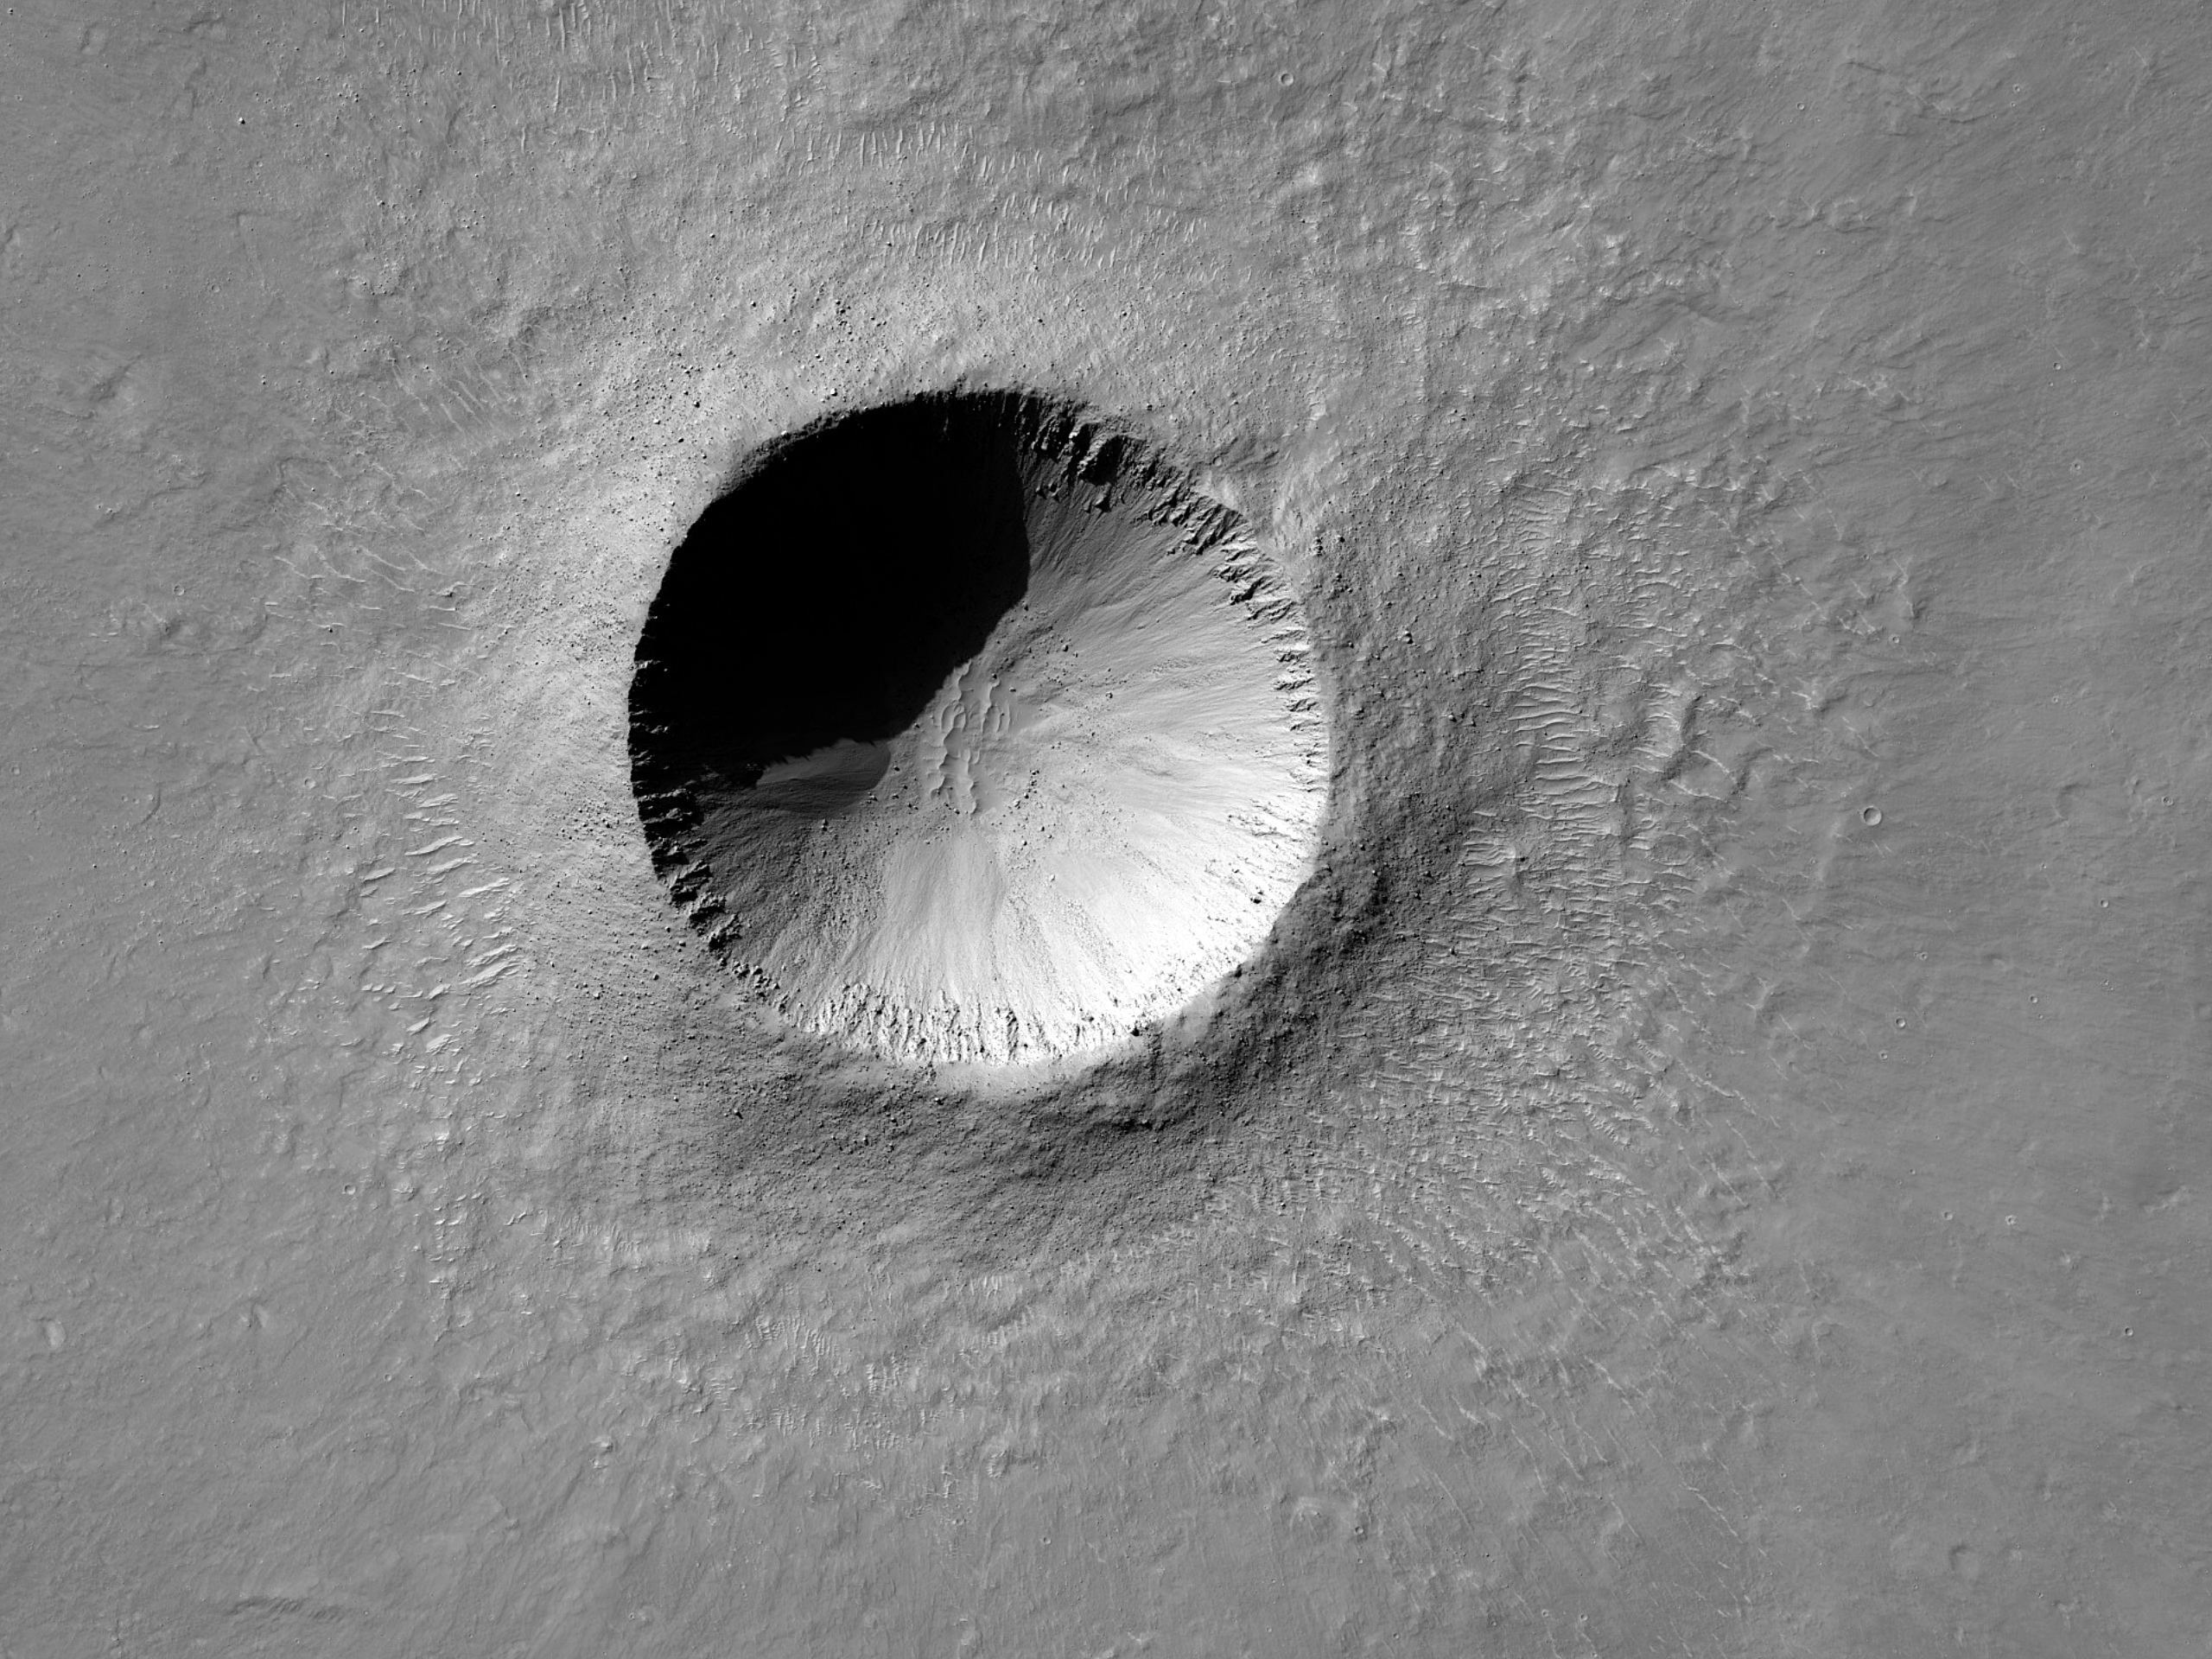 Nuovo cratere di 2 chilometri vicino al cratere Gusev